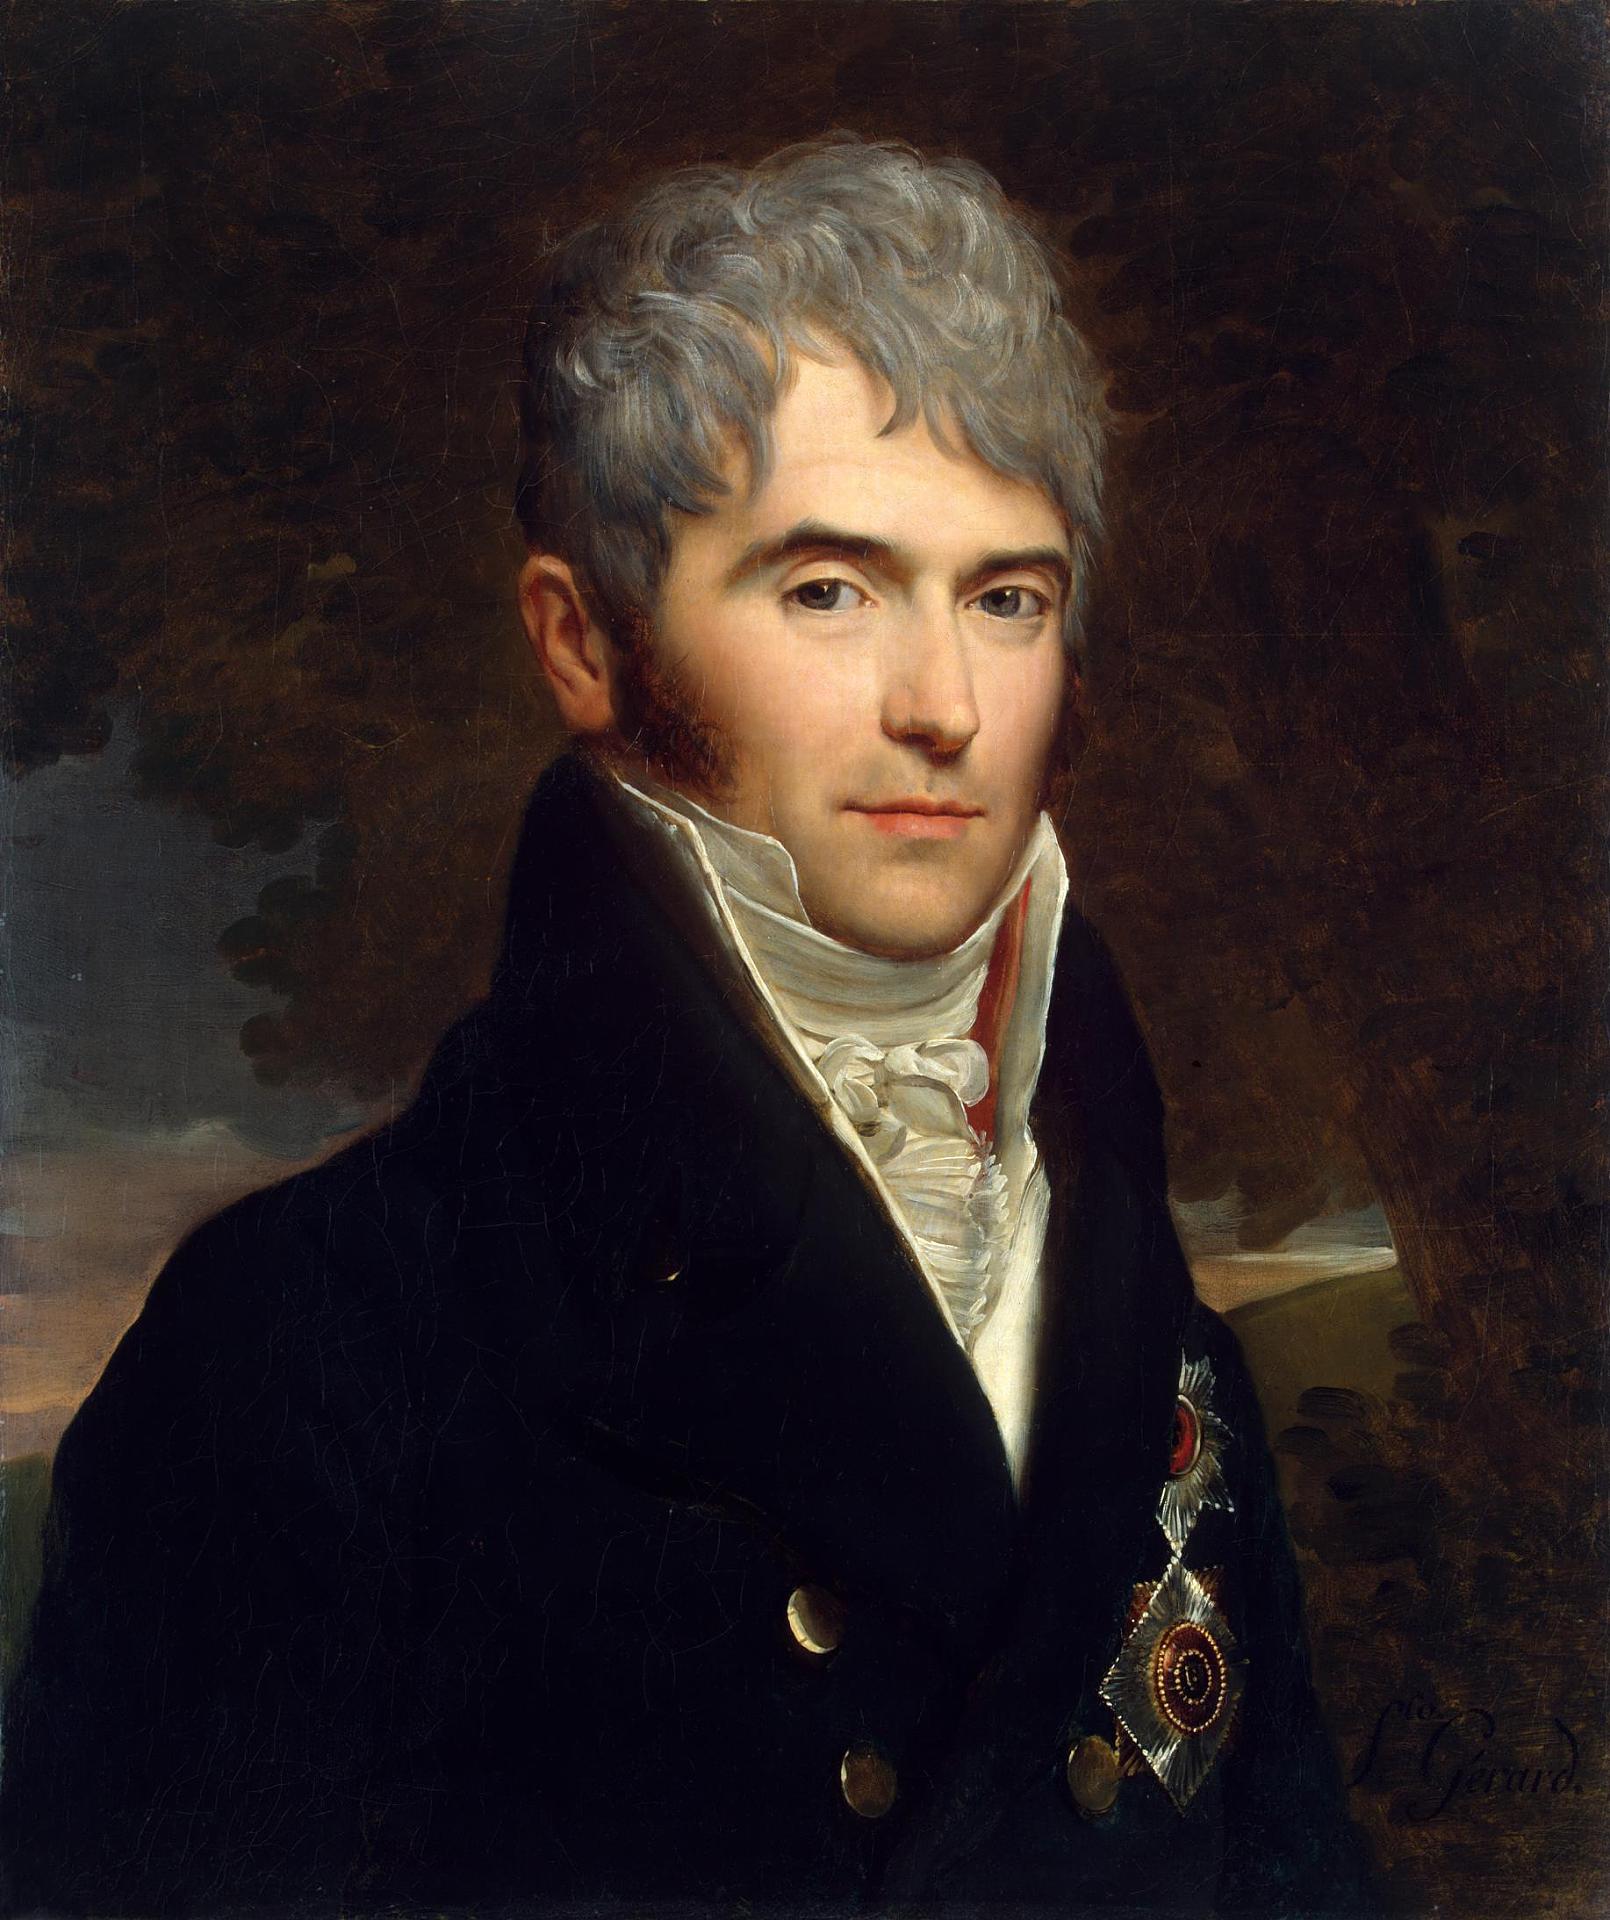 Франсуа-Паскаль-Симон Жерар. "Портрет князя В. П. Кочубея". 1809. Эрмитаж, Санкт-Петербург.